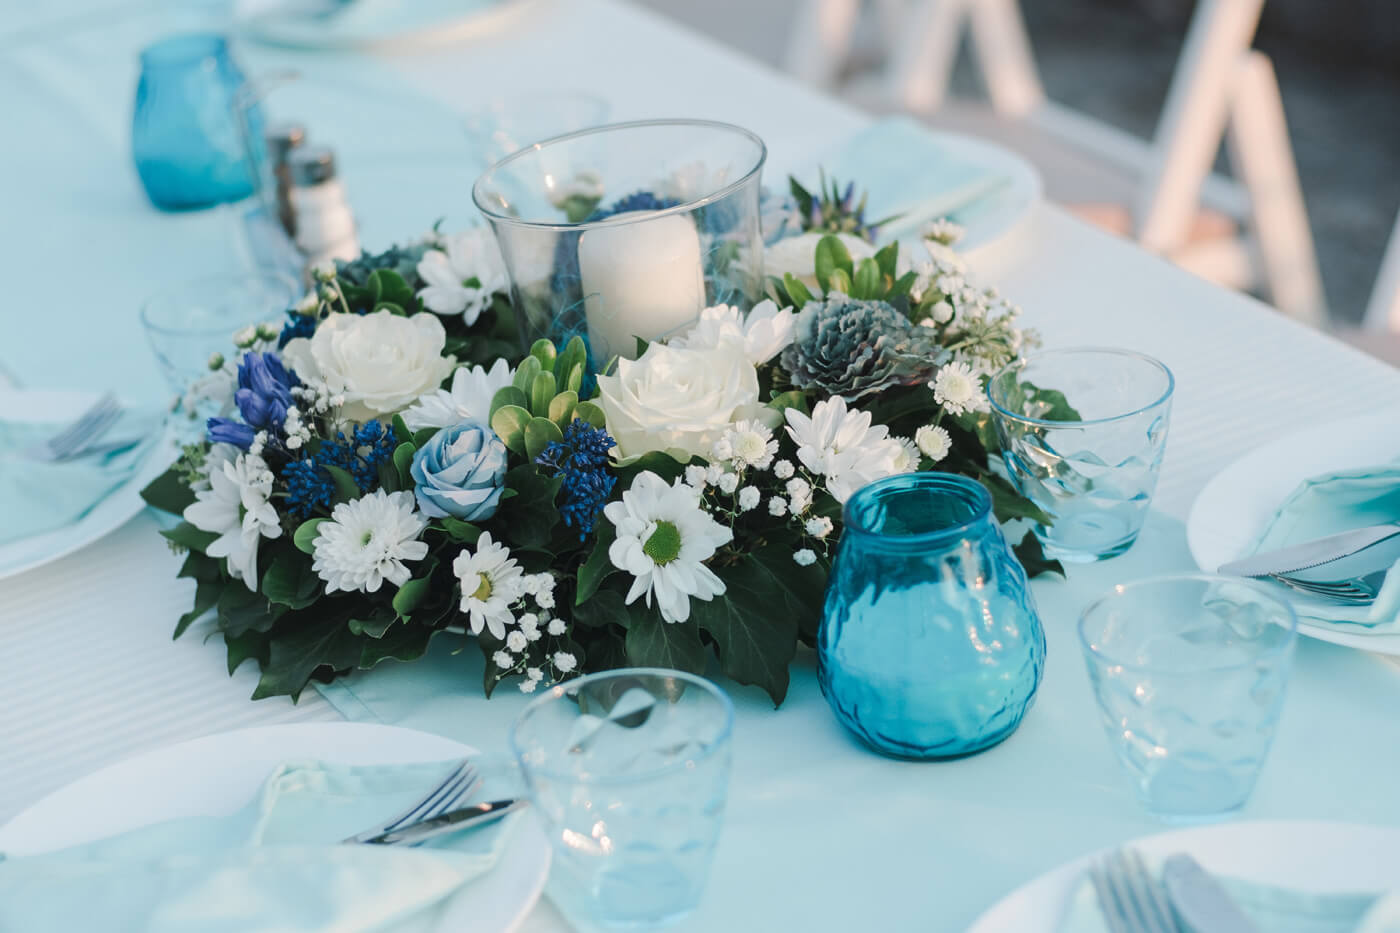 Tischdeko zur Hochzeit in Türkis oder Blau | Viele Ideen ...